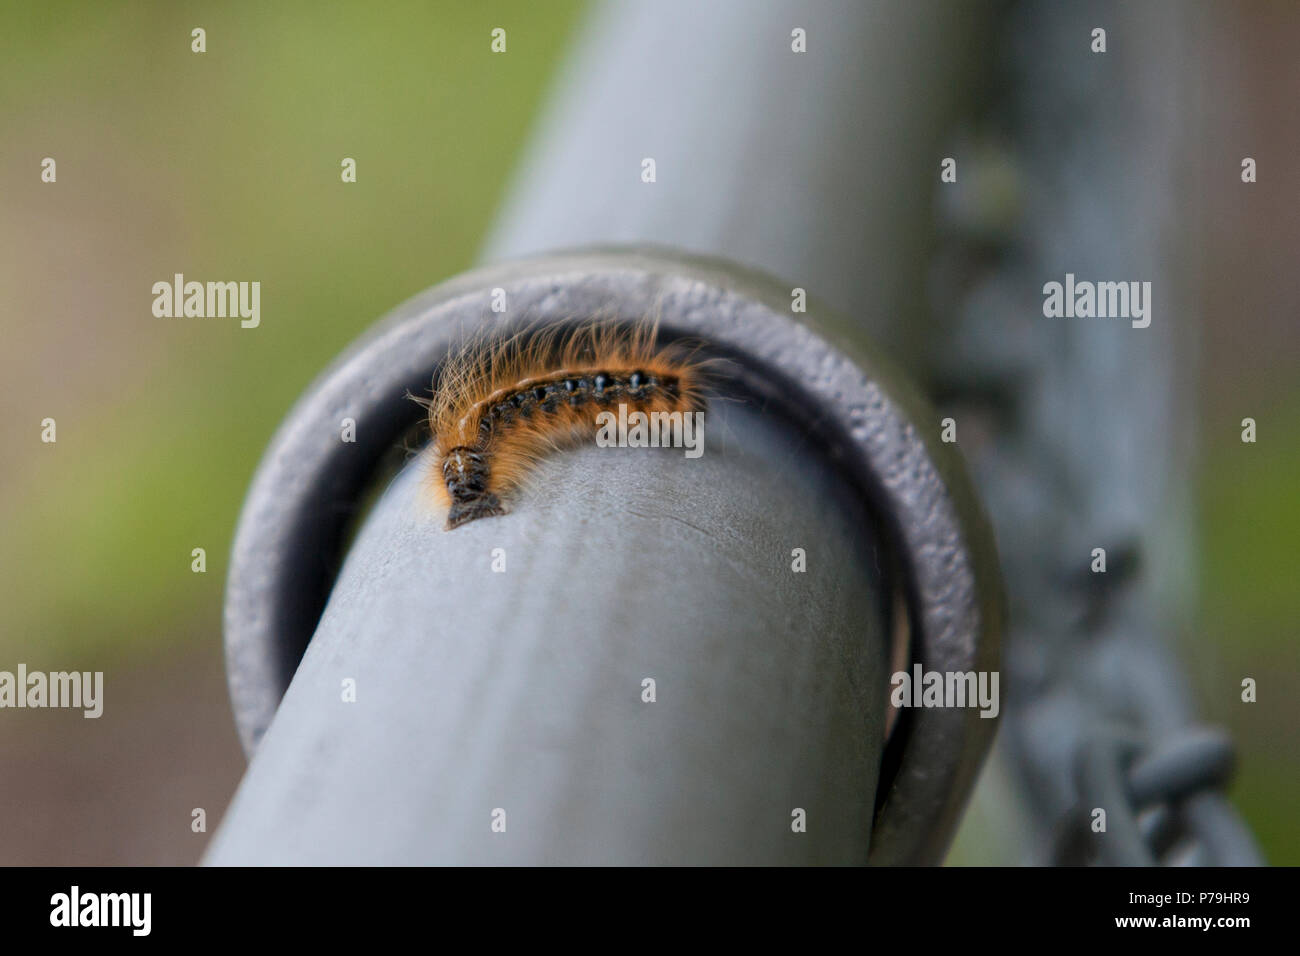 Ein Fuzzy-braun und schwarz Caterpillar locken um und schleicht entlang einem Metallzaun Stockfoto